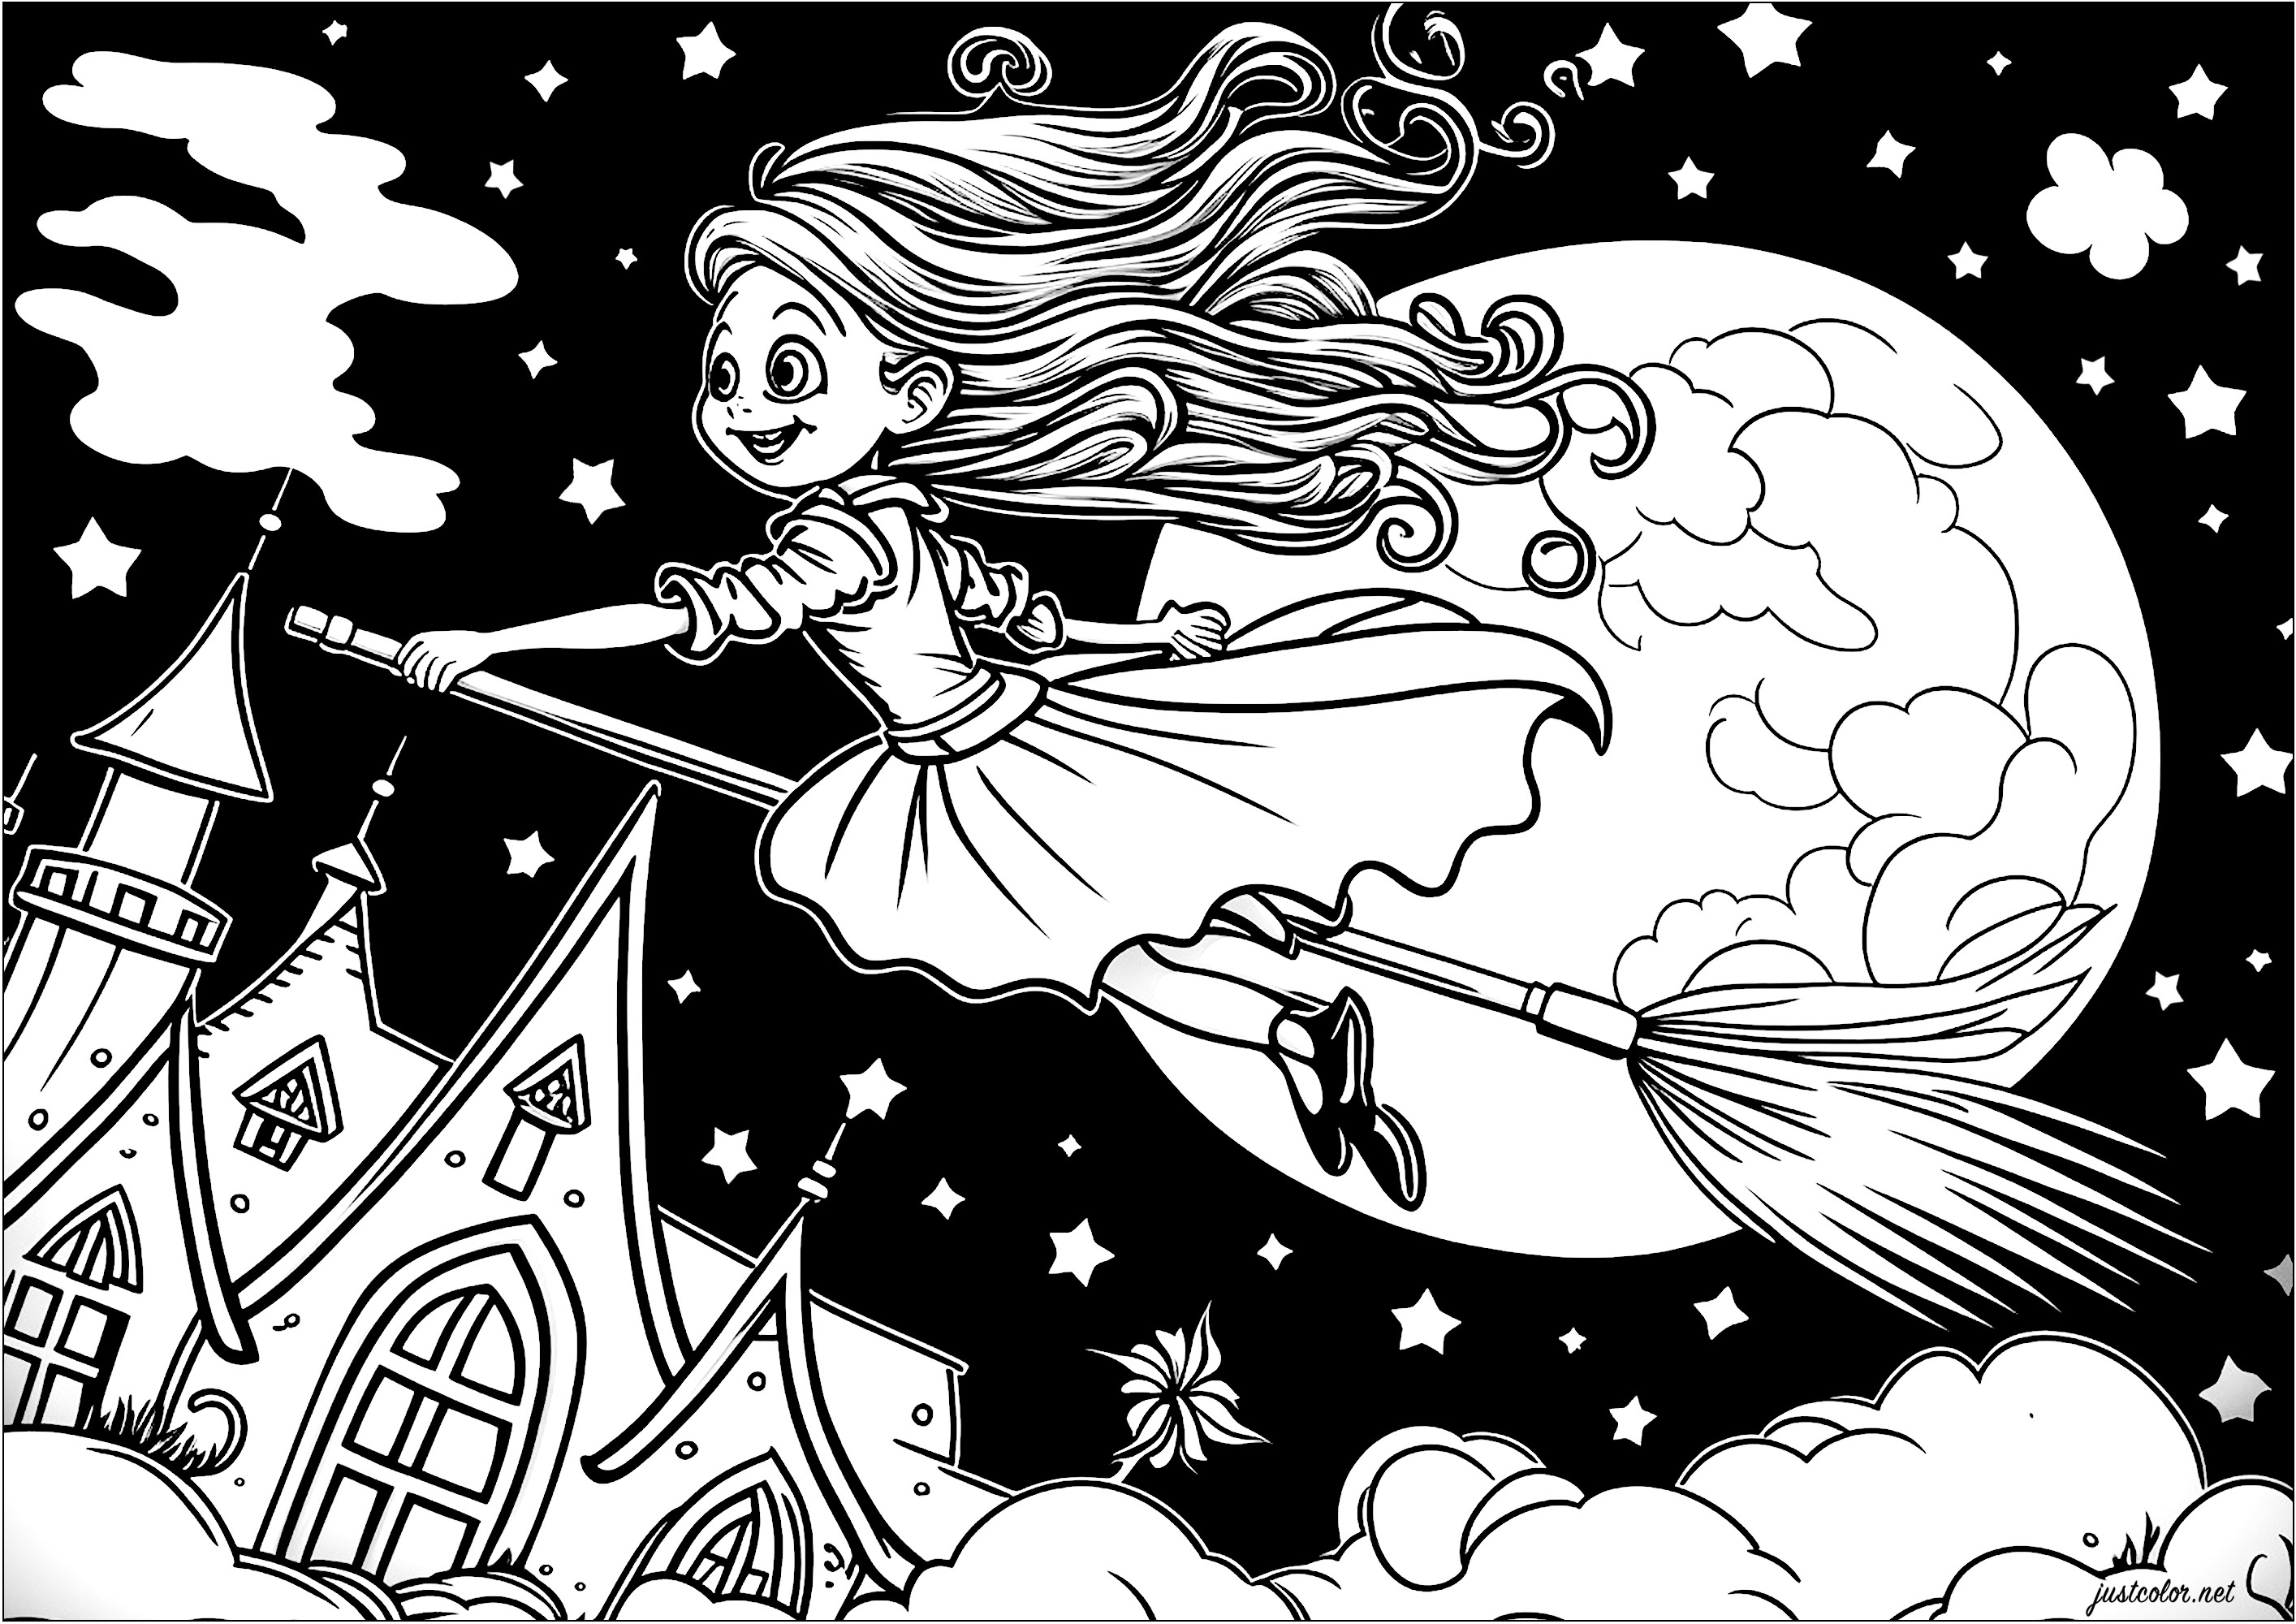 Colorazione di una giovane strega che vola sulla sua scopa. Ecco una graziosa strega rappresentata sulla sua scopa che vola nell'aria, sopra le nuvole. Indossa un abito lungo ed elegante e i suoi capelli sono mossi dal vento. La luna è piena e sembra gigante dietro di lei.